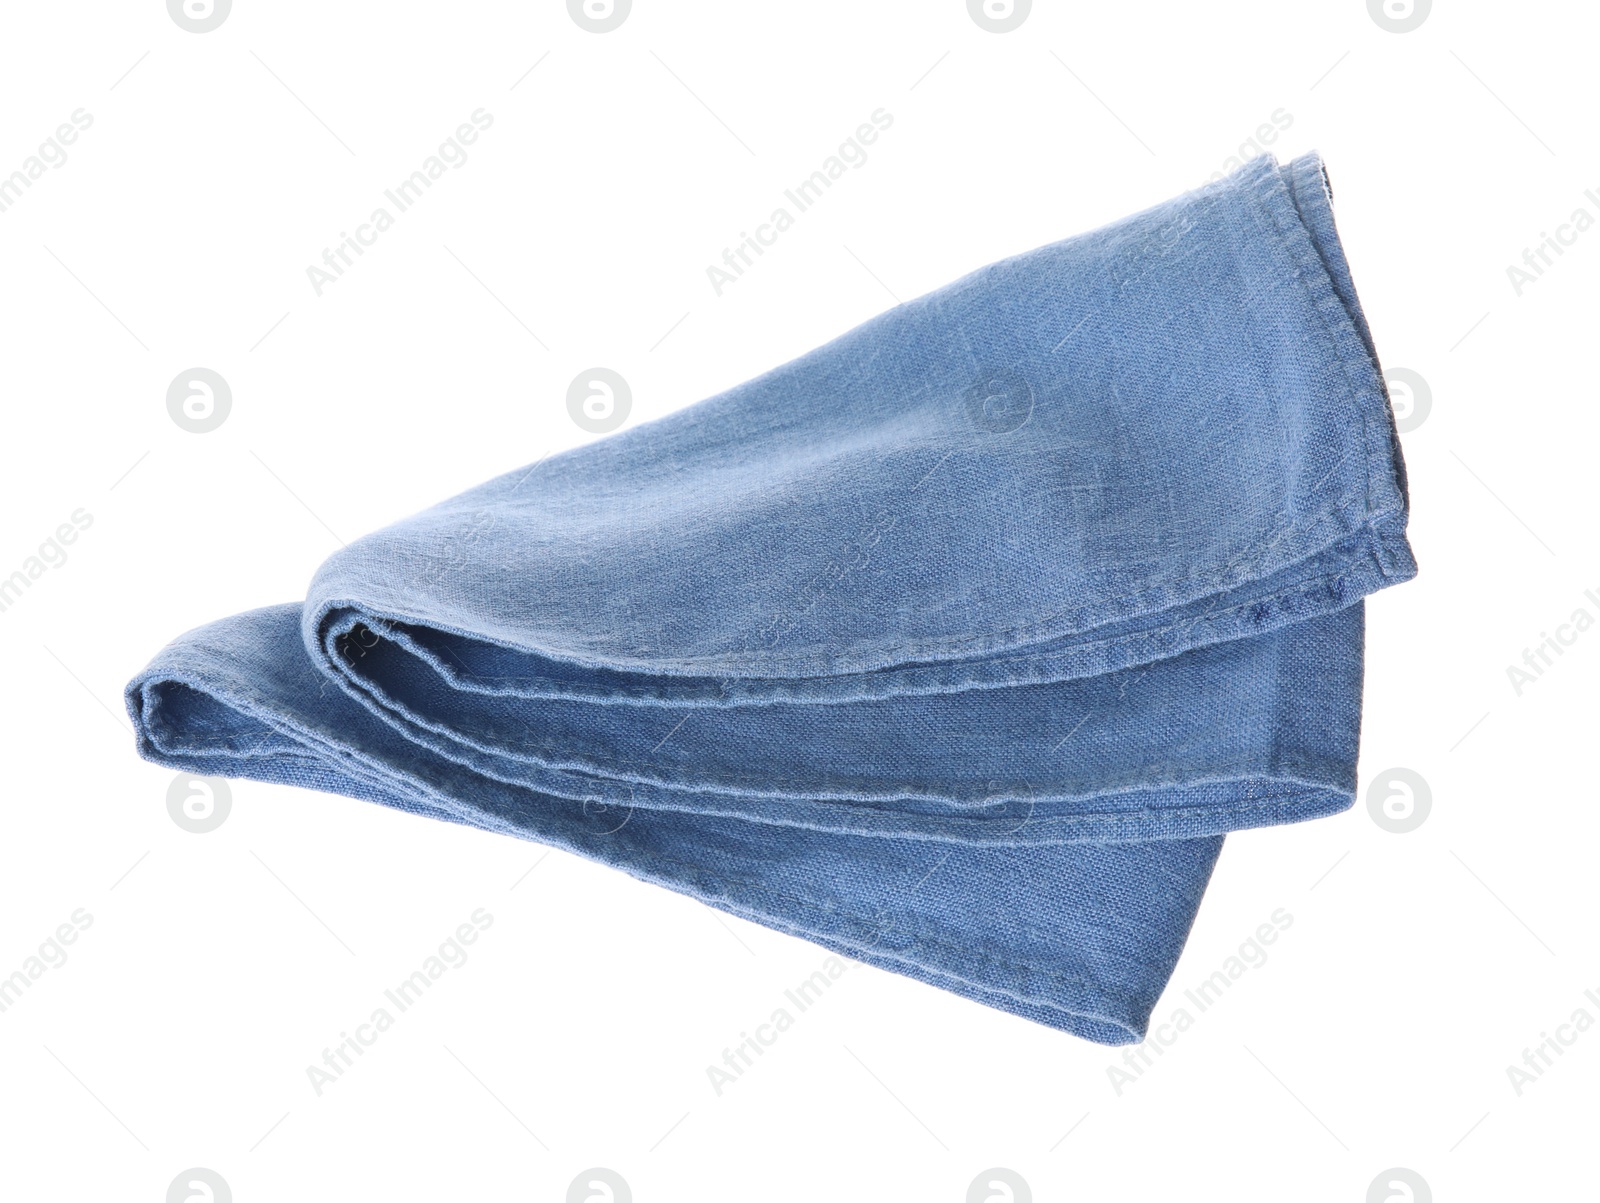 Photo of Soft blue fabric napkin isolated on white